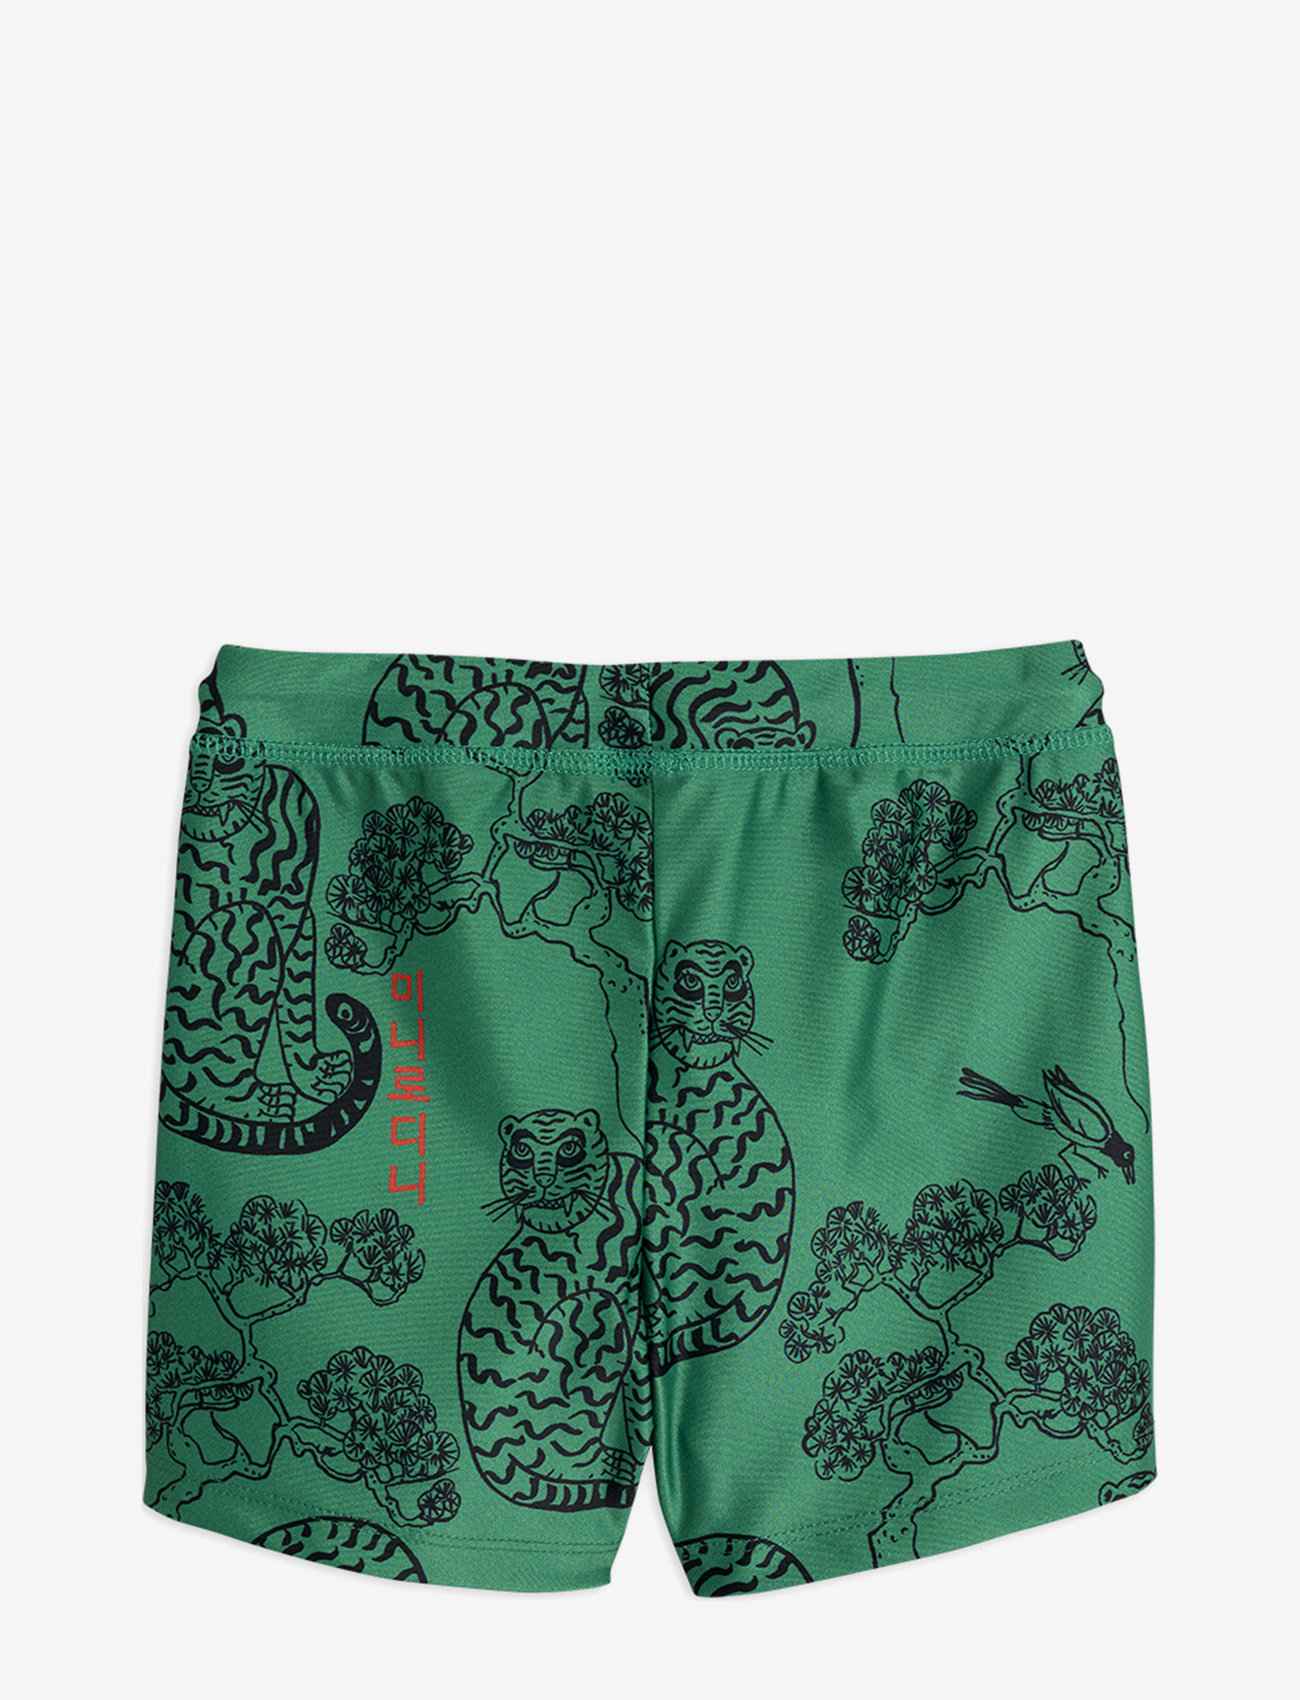 Mini Rodini - Tigers swim pants - green - 1